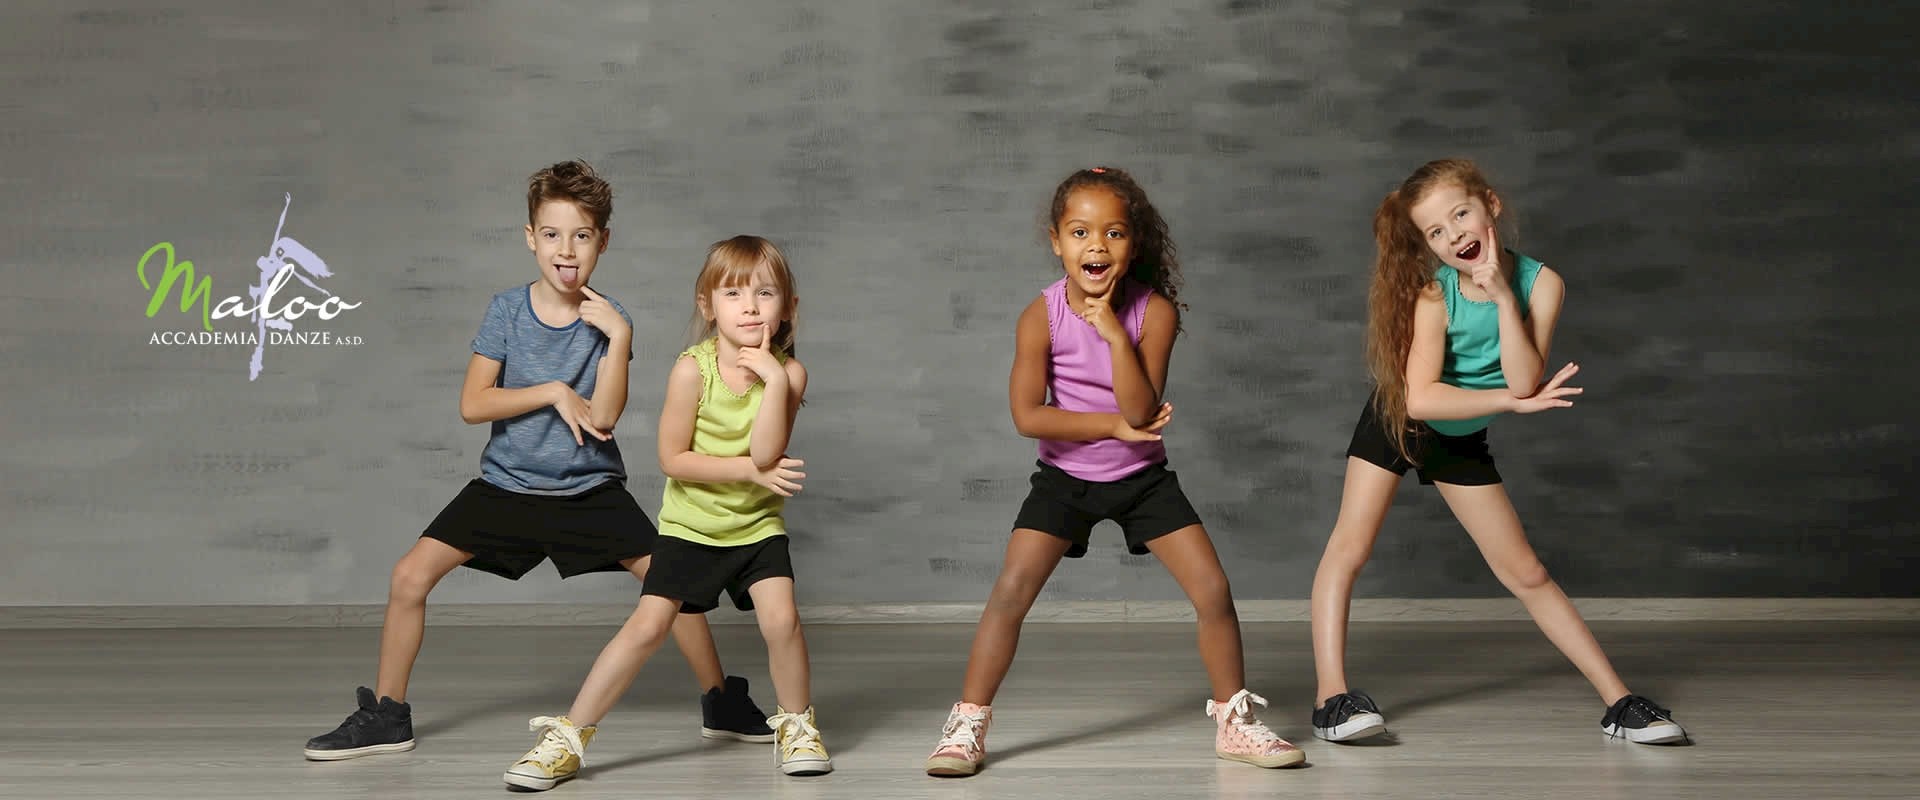 baby dance: corso di ballo per bambini. gioco-danza per bambini dai 3 anni. un bel modo per crescere.